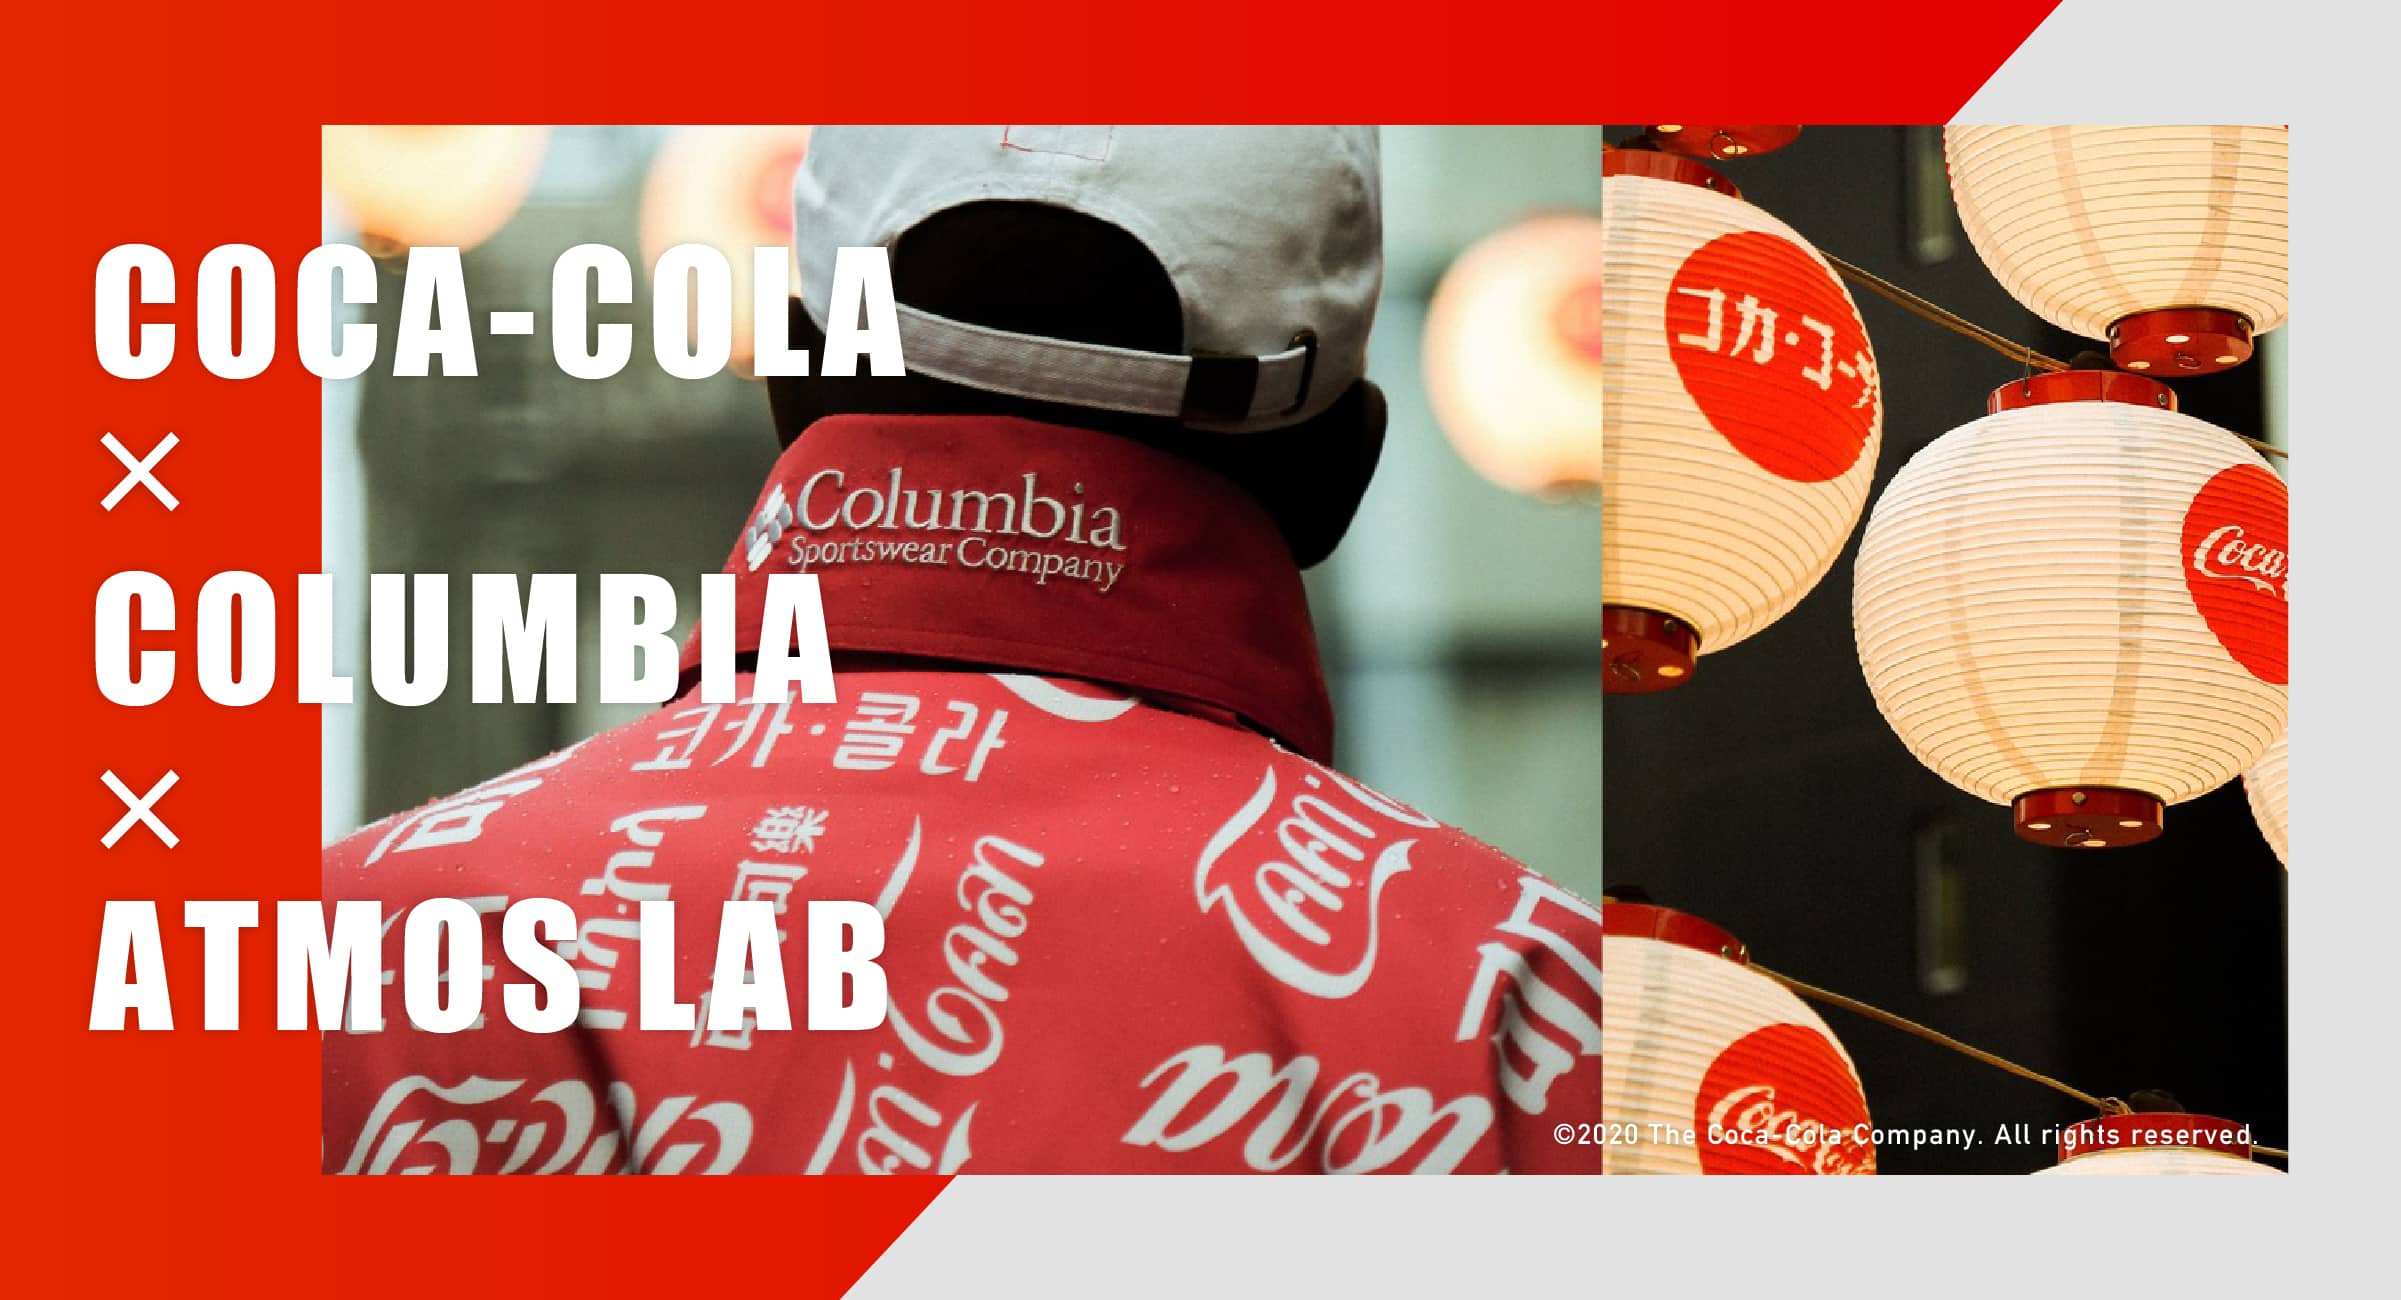 "COCA-COLA × COLUMBIA × ATMOS LAB"